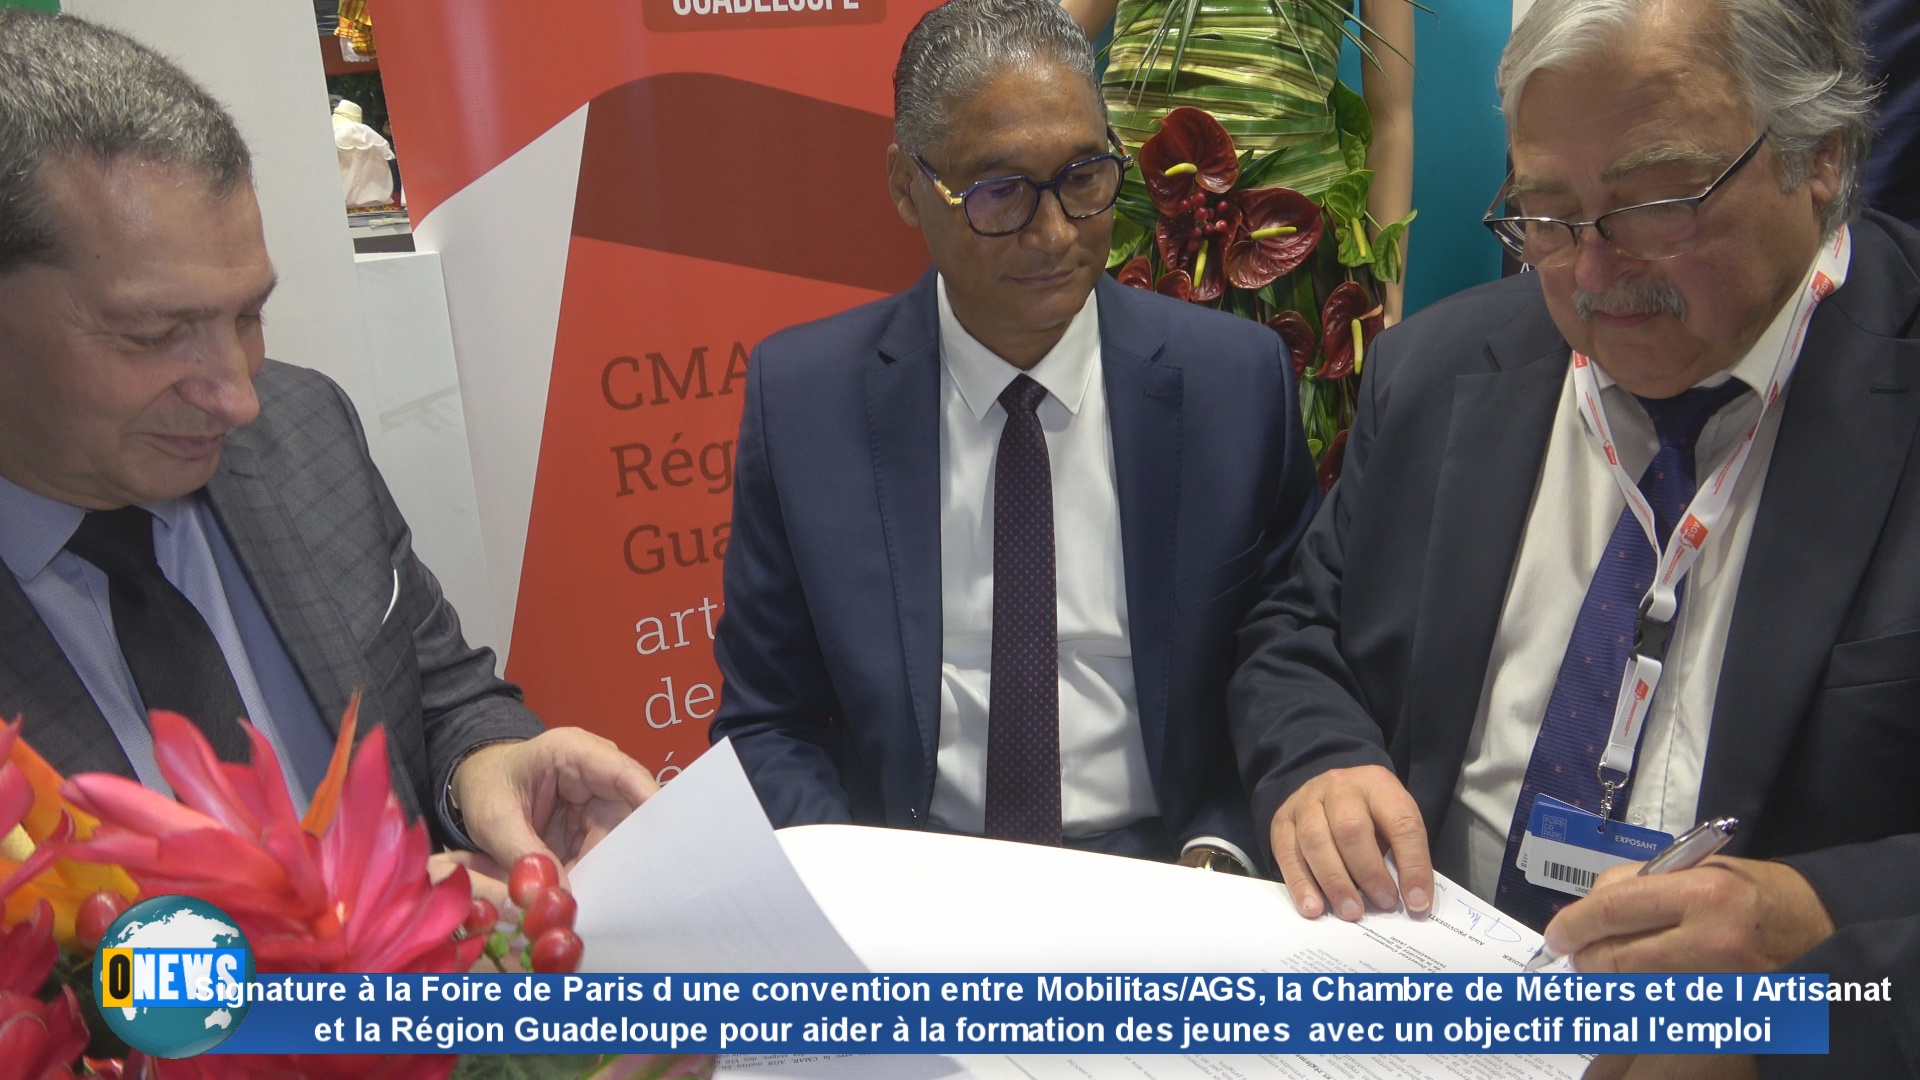 Signature à la Foire de Paris d une convention entre Mobilitas/AGS, la Chambre de Métiers et de l Artisanat et la Région Guadeloupe pour aider à la formation des jeunes  avec un objectif final l’emploi